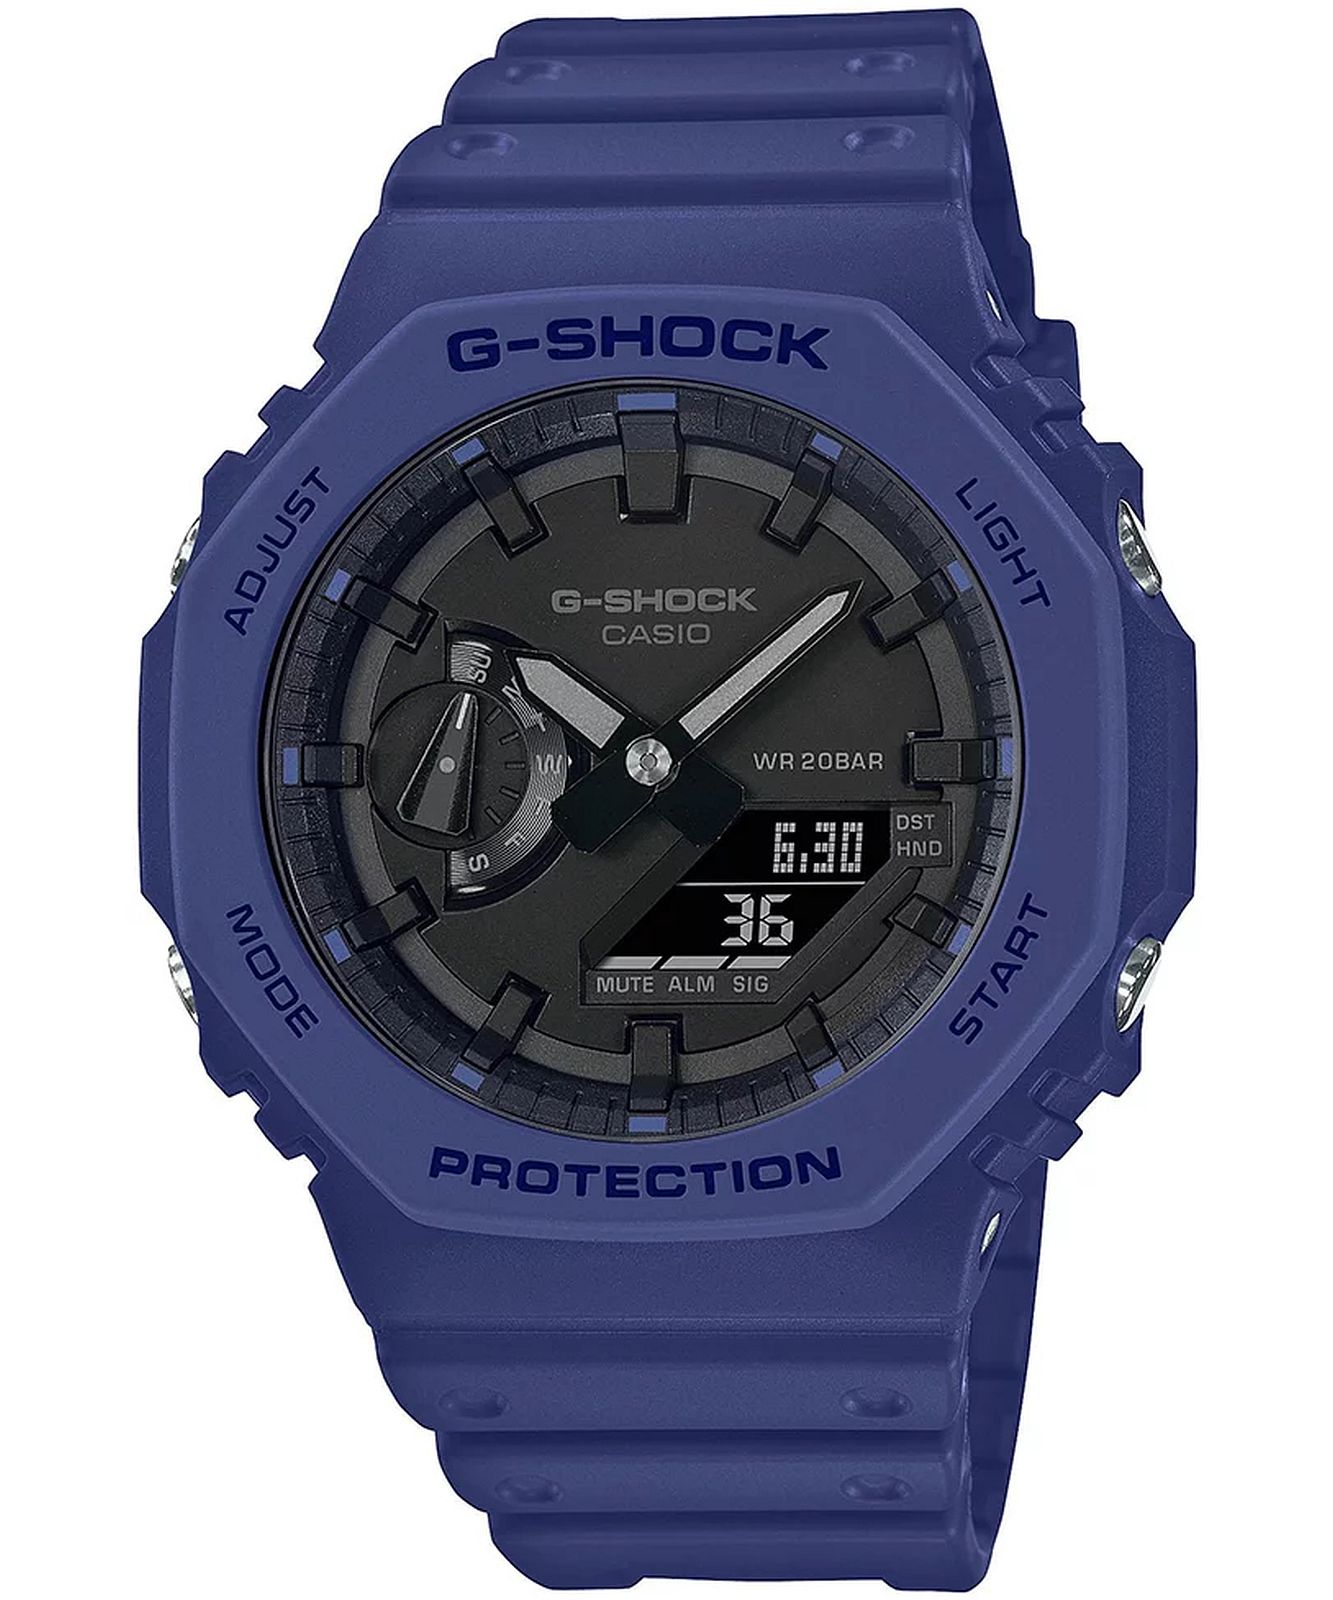 Casio GA-2100-2AER - G-SHOCK Carbon Core Guard Watch • Watchard.com